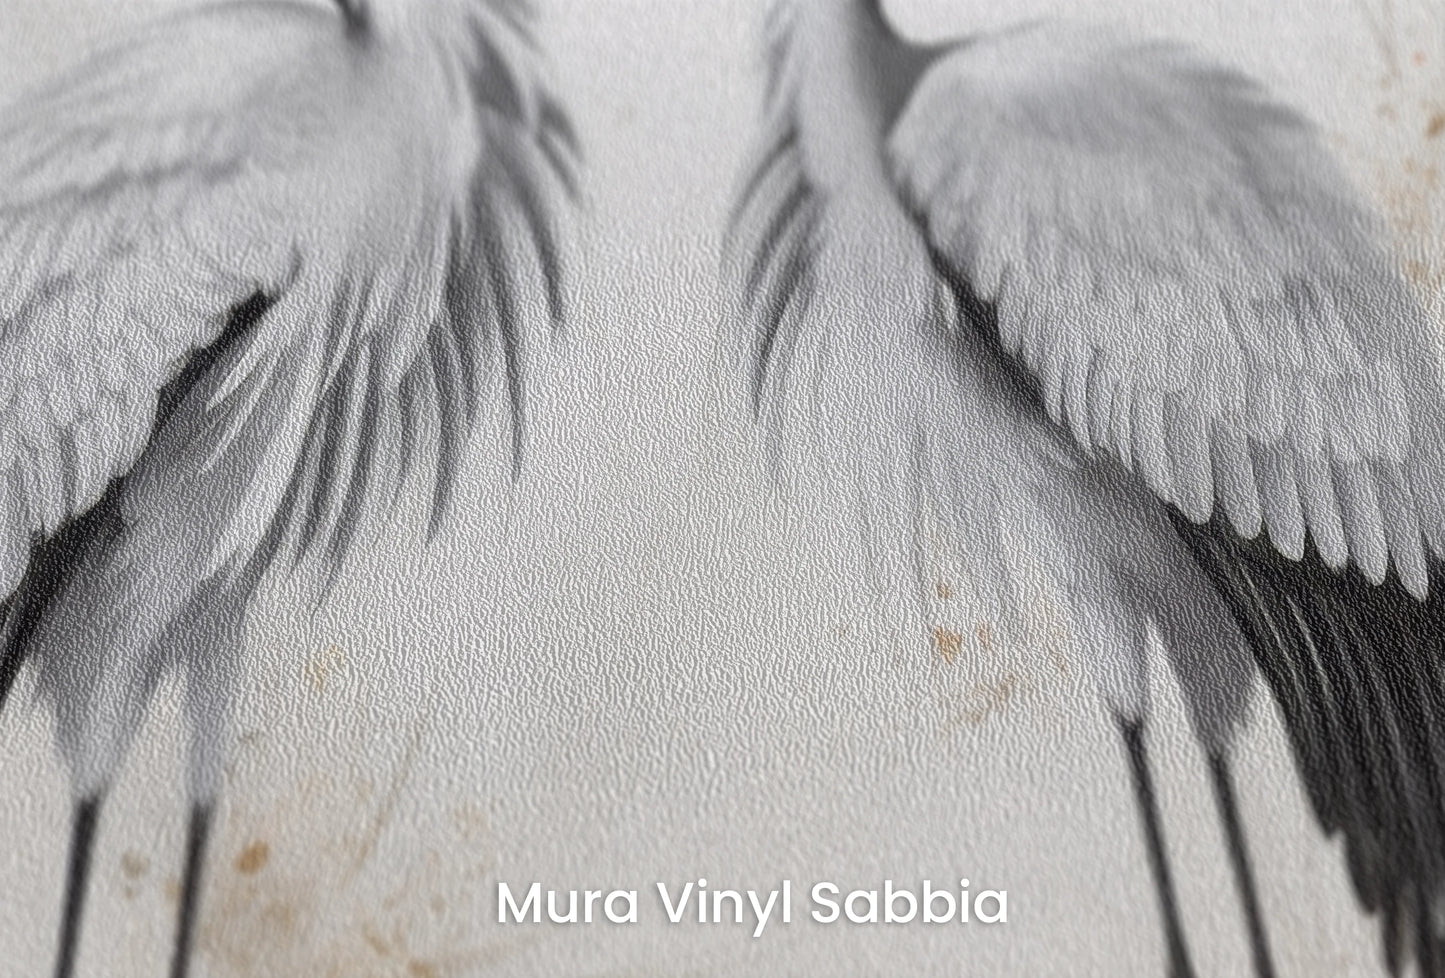 Zbliżenie na artystyczną fototapetę o nazwie Moonlight Ballet na podłożu Mura Vinyl Sabbia struktura grubego ziarna piasku.